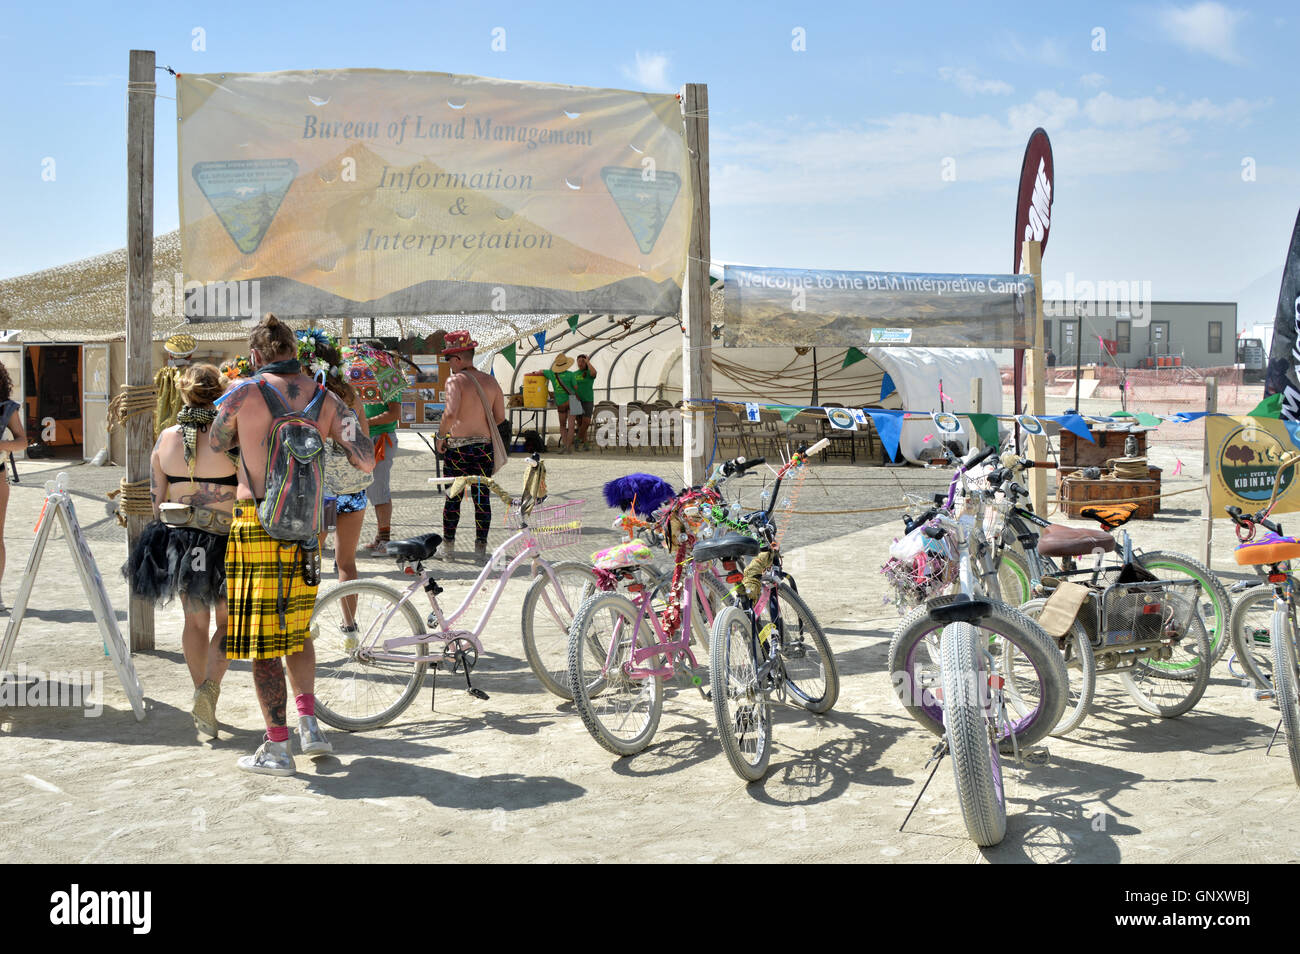 Bruciatori sosta presso la BLM information center durante l annuale desert festival Burning Man Agosto 30, 2016 in Black Rock City, Nevada. Il festival annuale attrae 70.000 partecipanti in una delle più remote e inospitali deserti in America. Foto Stock